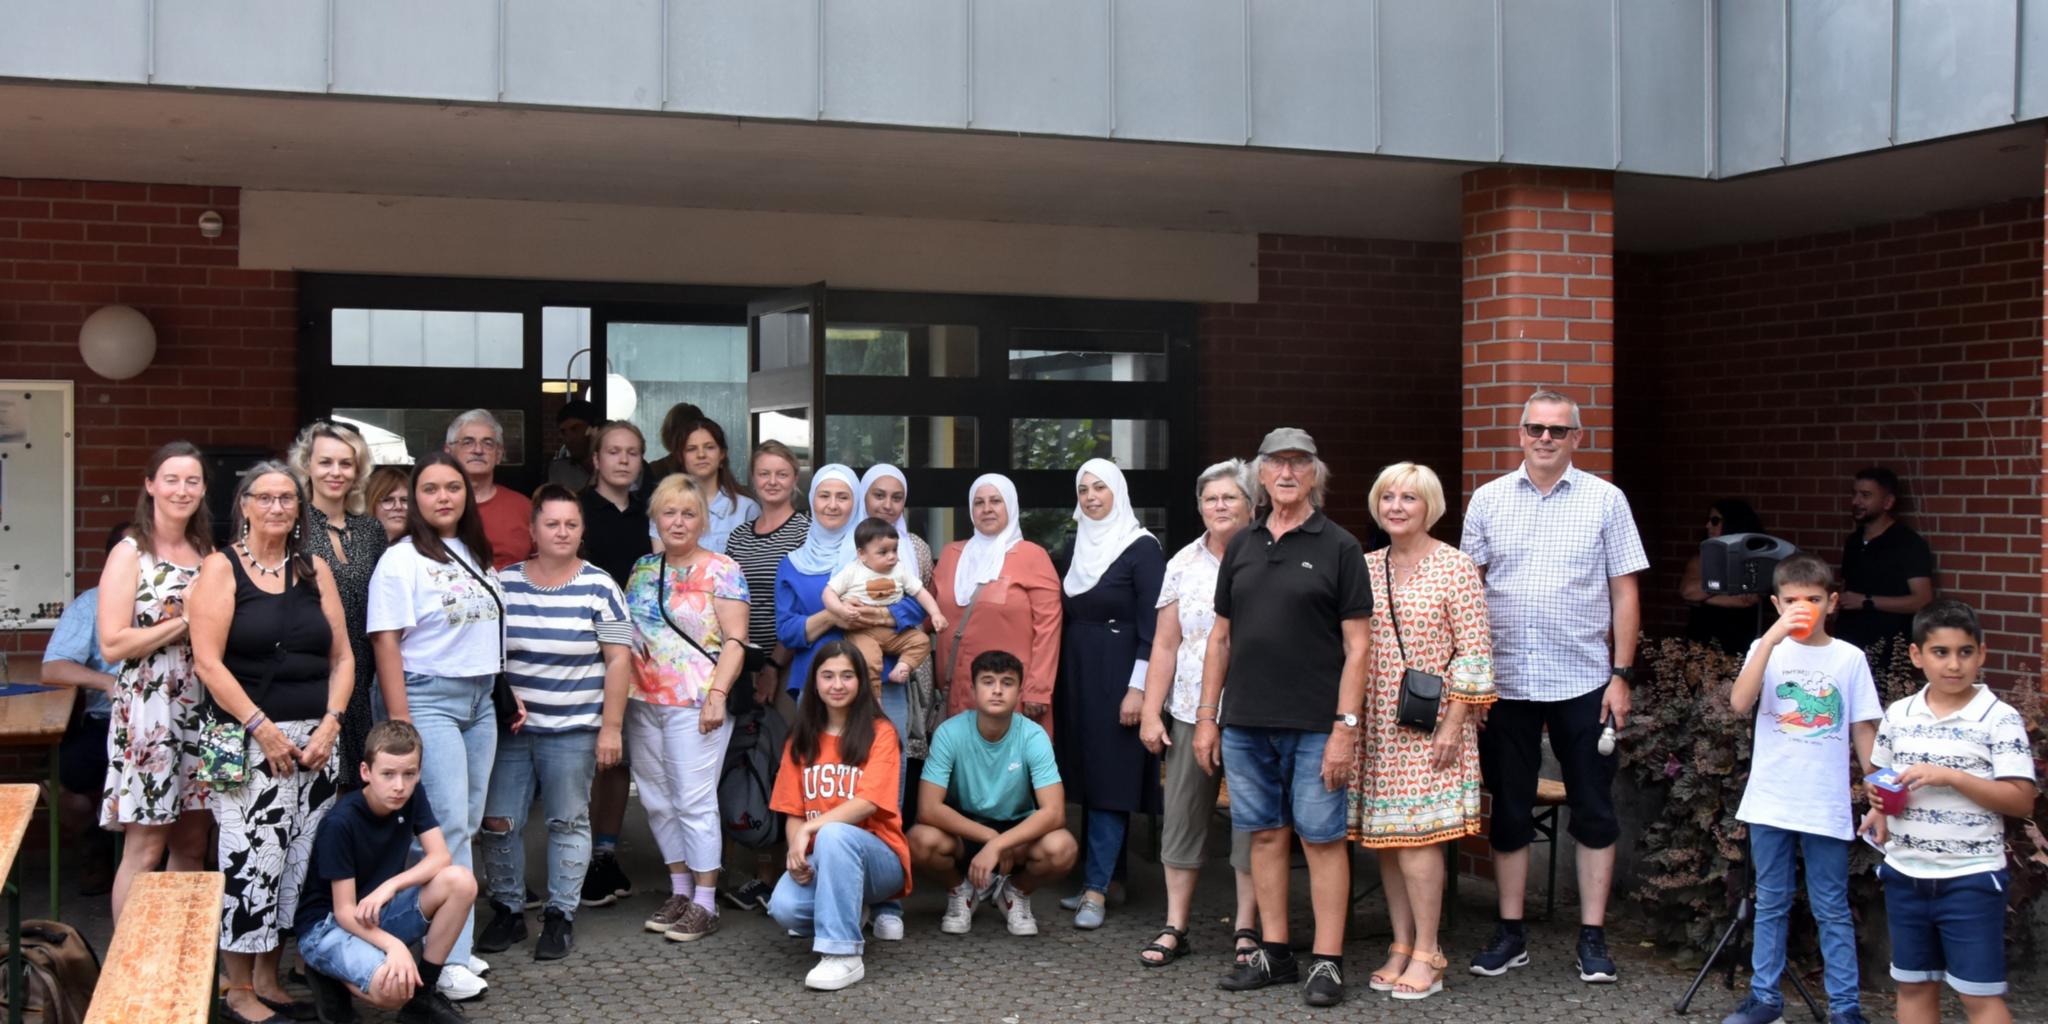 Viele Menschen aus verschiedenen Kulturen kamen zur Interkulturellen Begegnung an die Begegnungskirche in Köllerbach. Foto: Ute Kirch/Bistum Trier